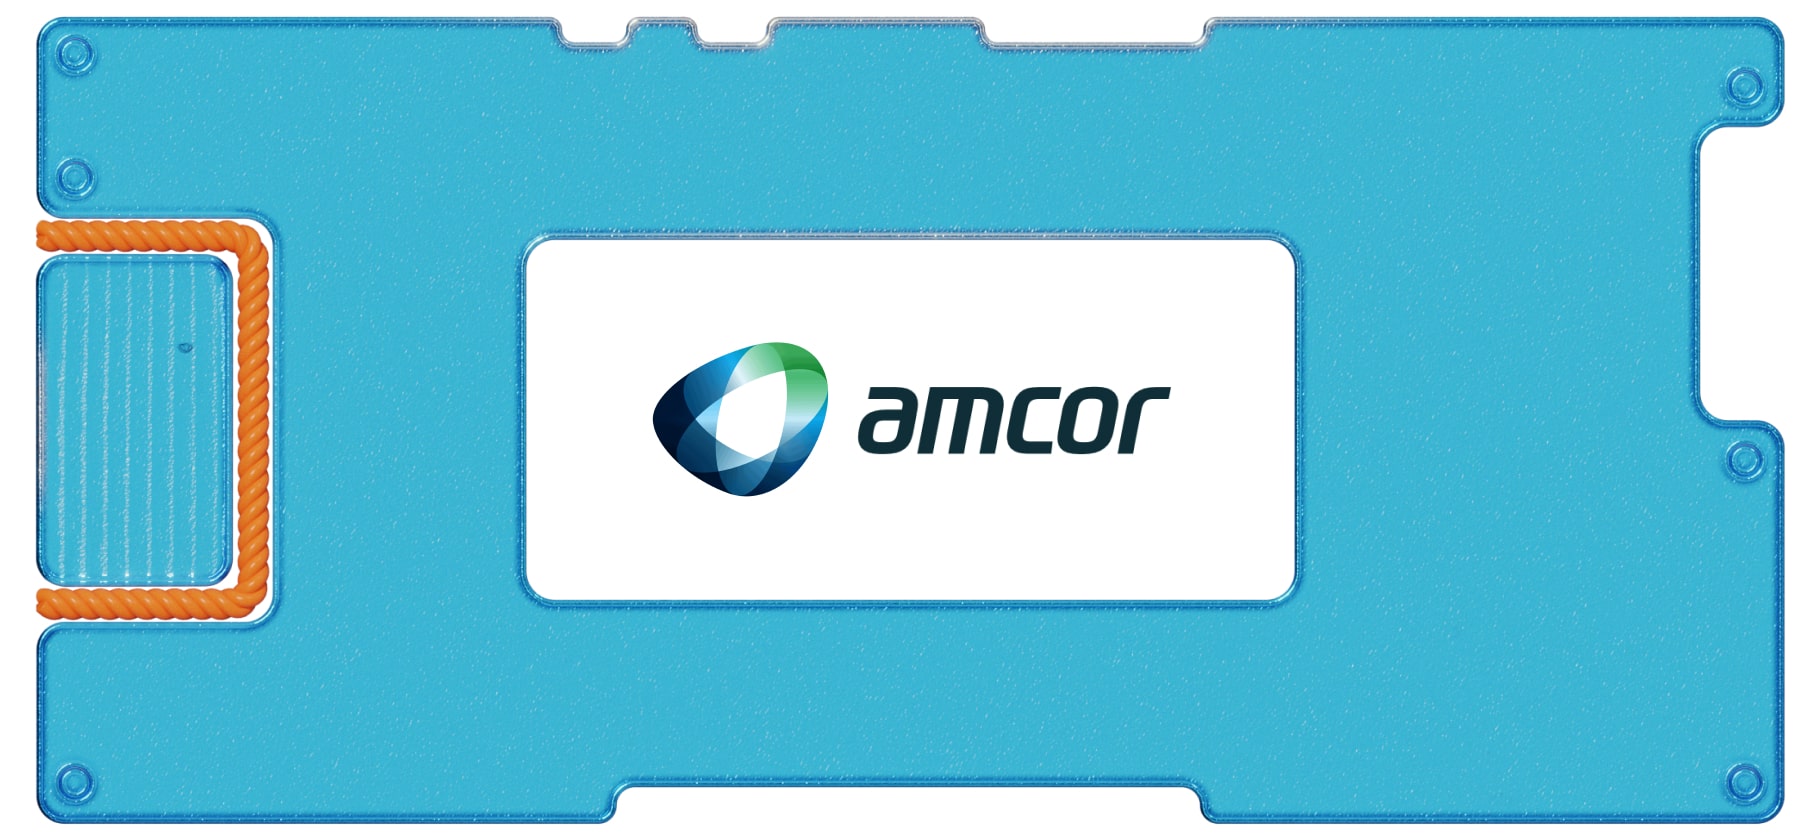 Инвестидея: Amcor, потому что деньги должны работать